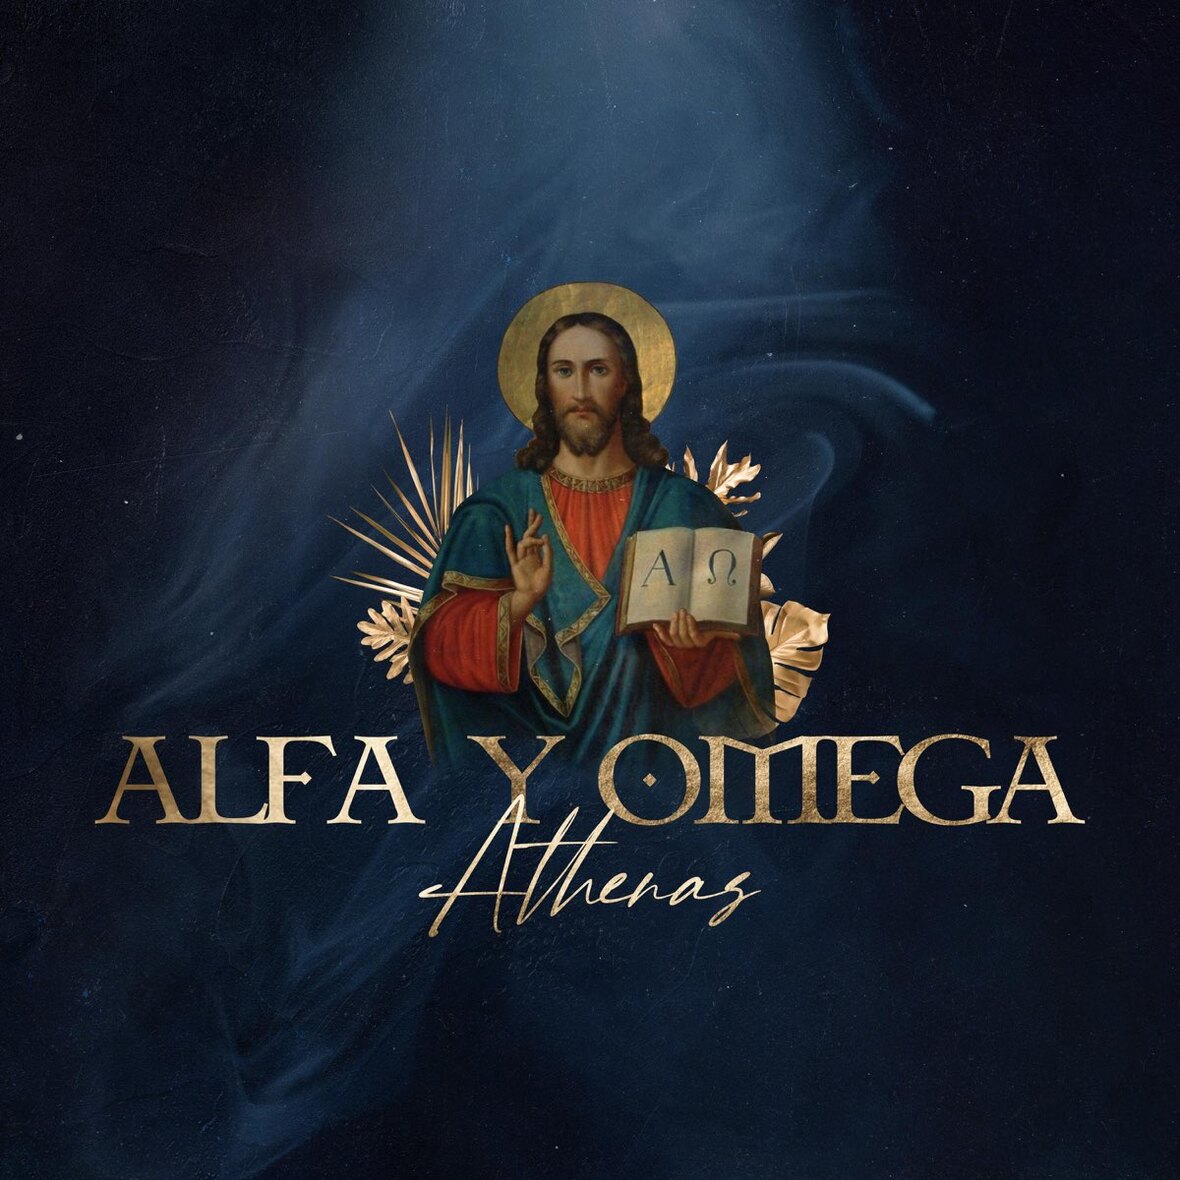 ATHENAS celebra la nominación al Latin Grammy “Alfa y Omega”